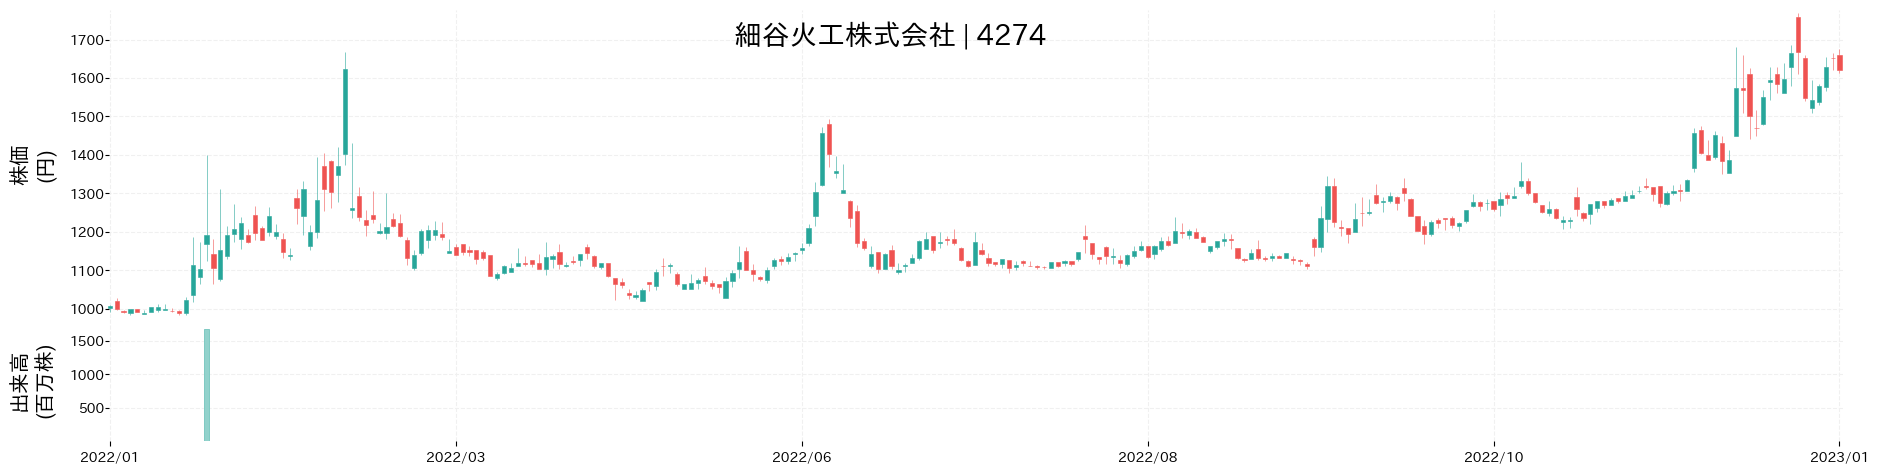 細谷火工の株価推移(2022)